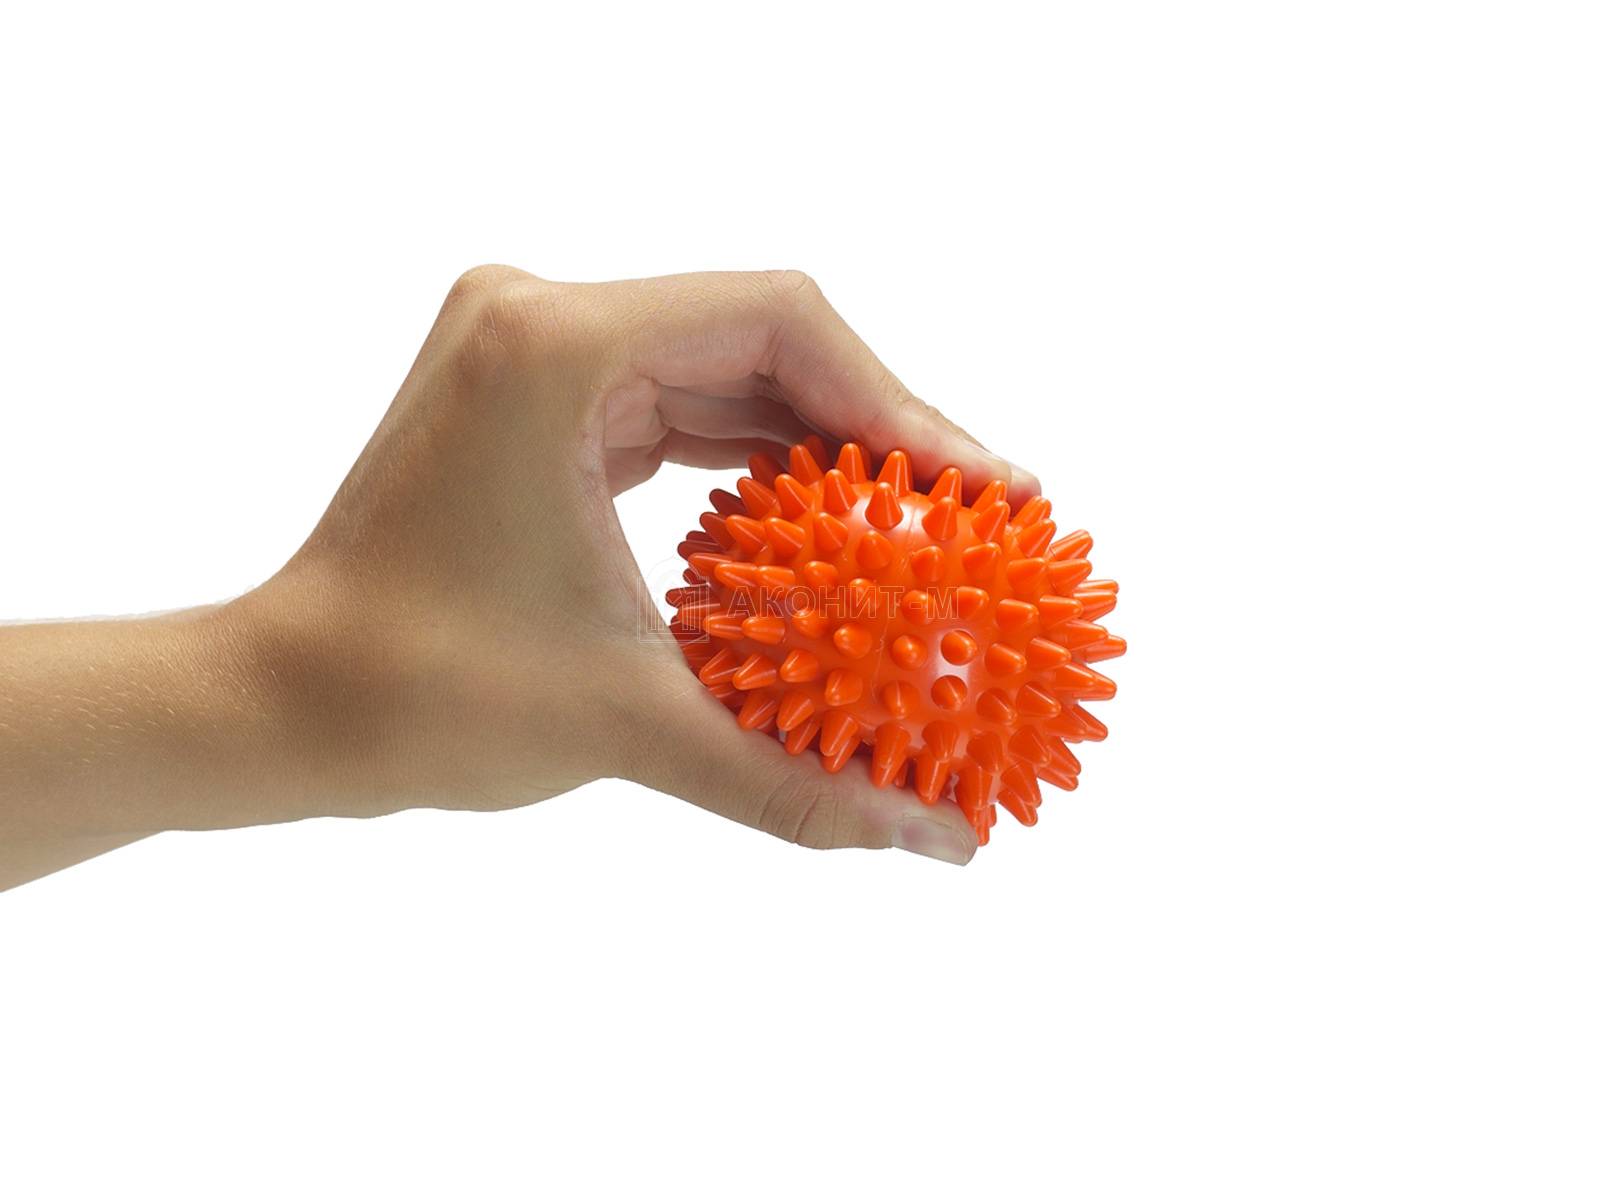 Массажный мяч мягкий "Бьюти" (оранжевый, диам. 8 см) набор 2 шт.